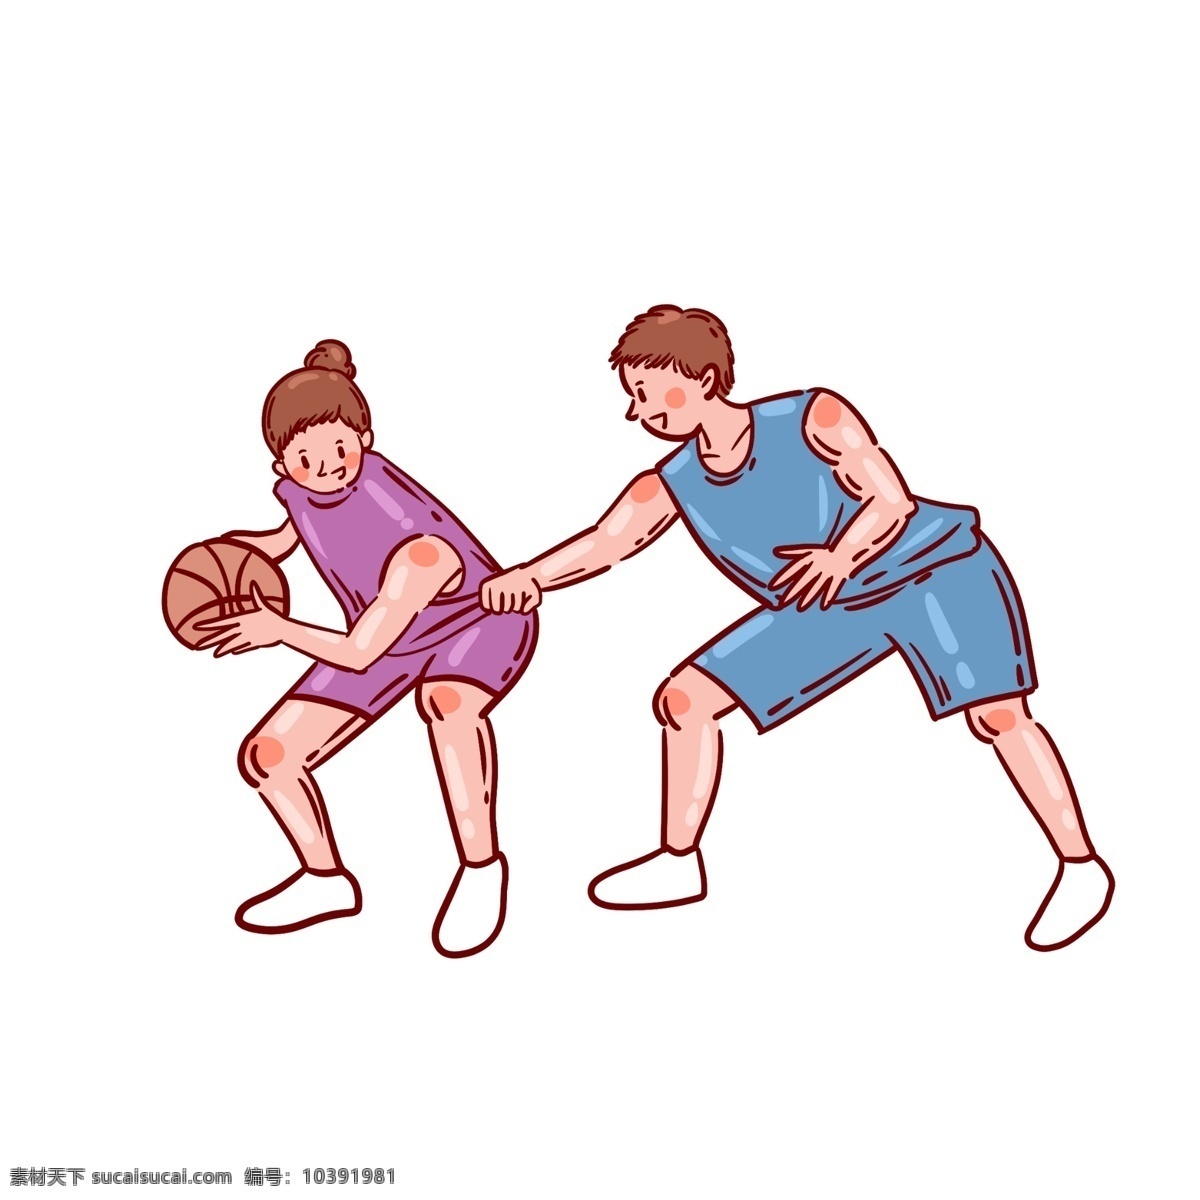 卡通 矢量 免 抠 可爱 篮球 人物 免抠 打篮球 女生 男生 蓝色 紫色 篮球衣 小白鞋 运动 夏季 快乐 开心 丸子头